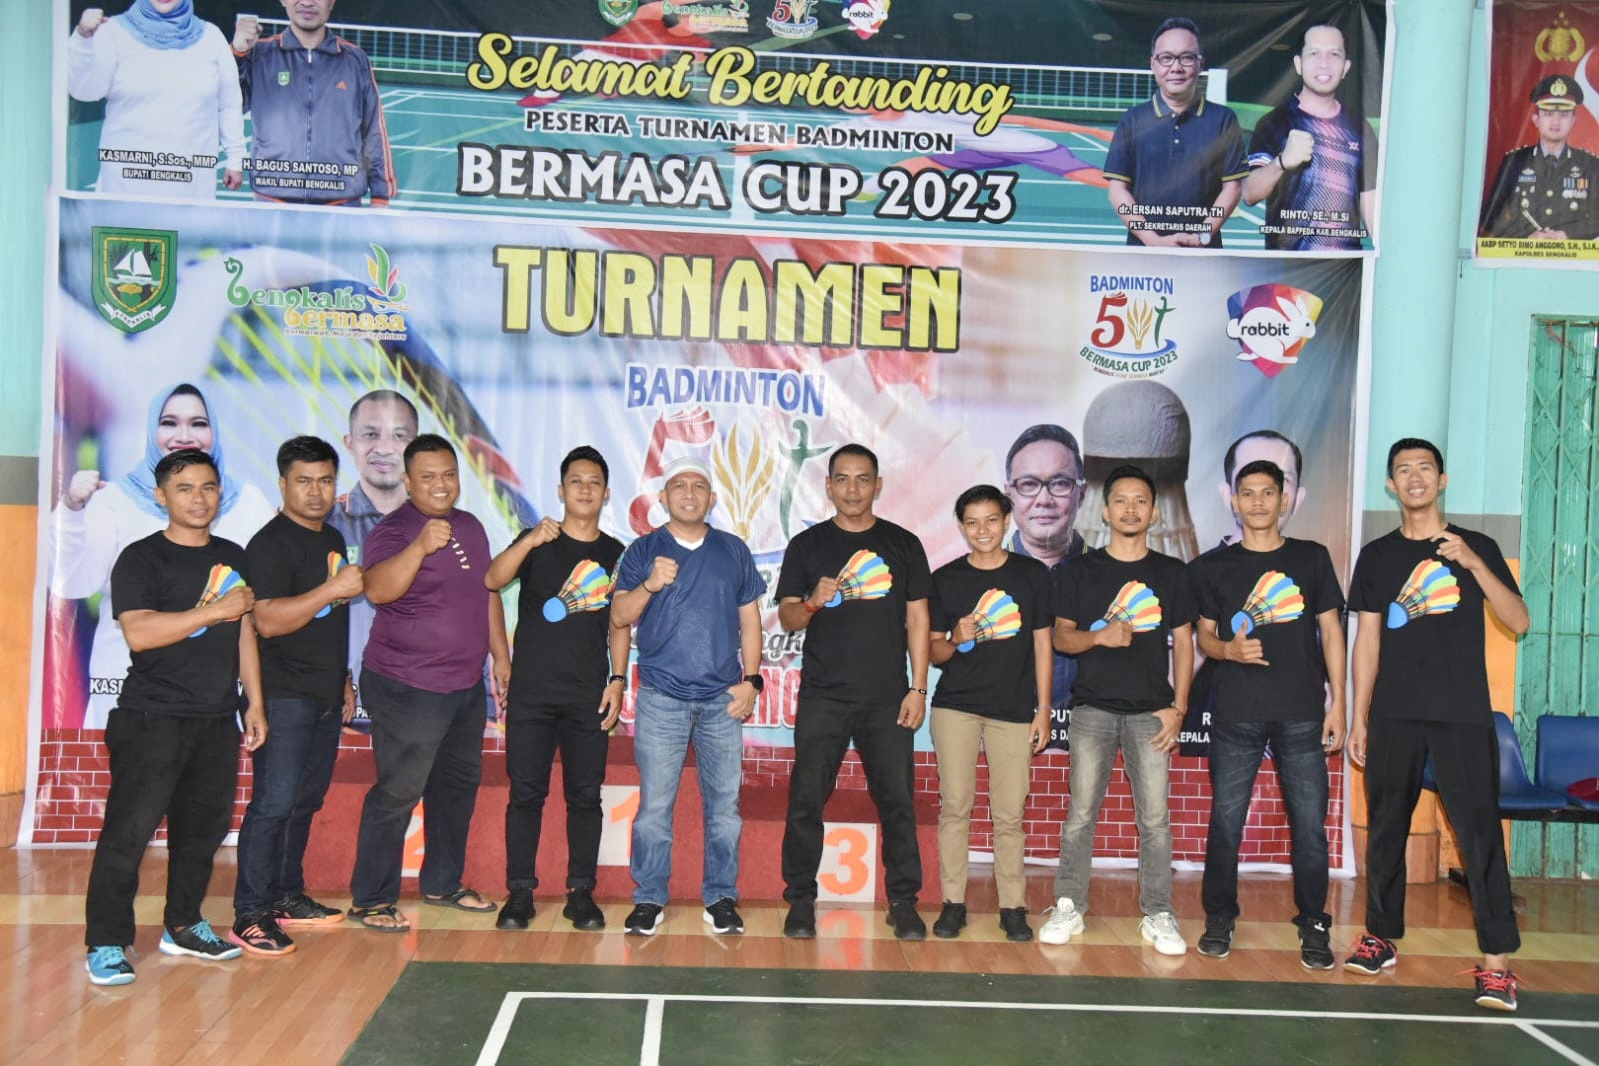 Sempena Hari Jadi Ke-511 Bengkalis, Turnamen Badminton Bermasa Cup 2023 Resmi Dibuka